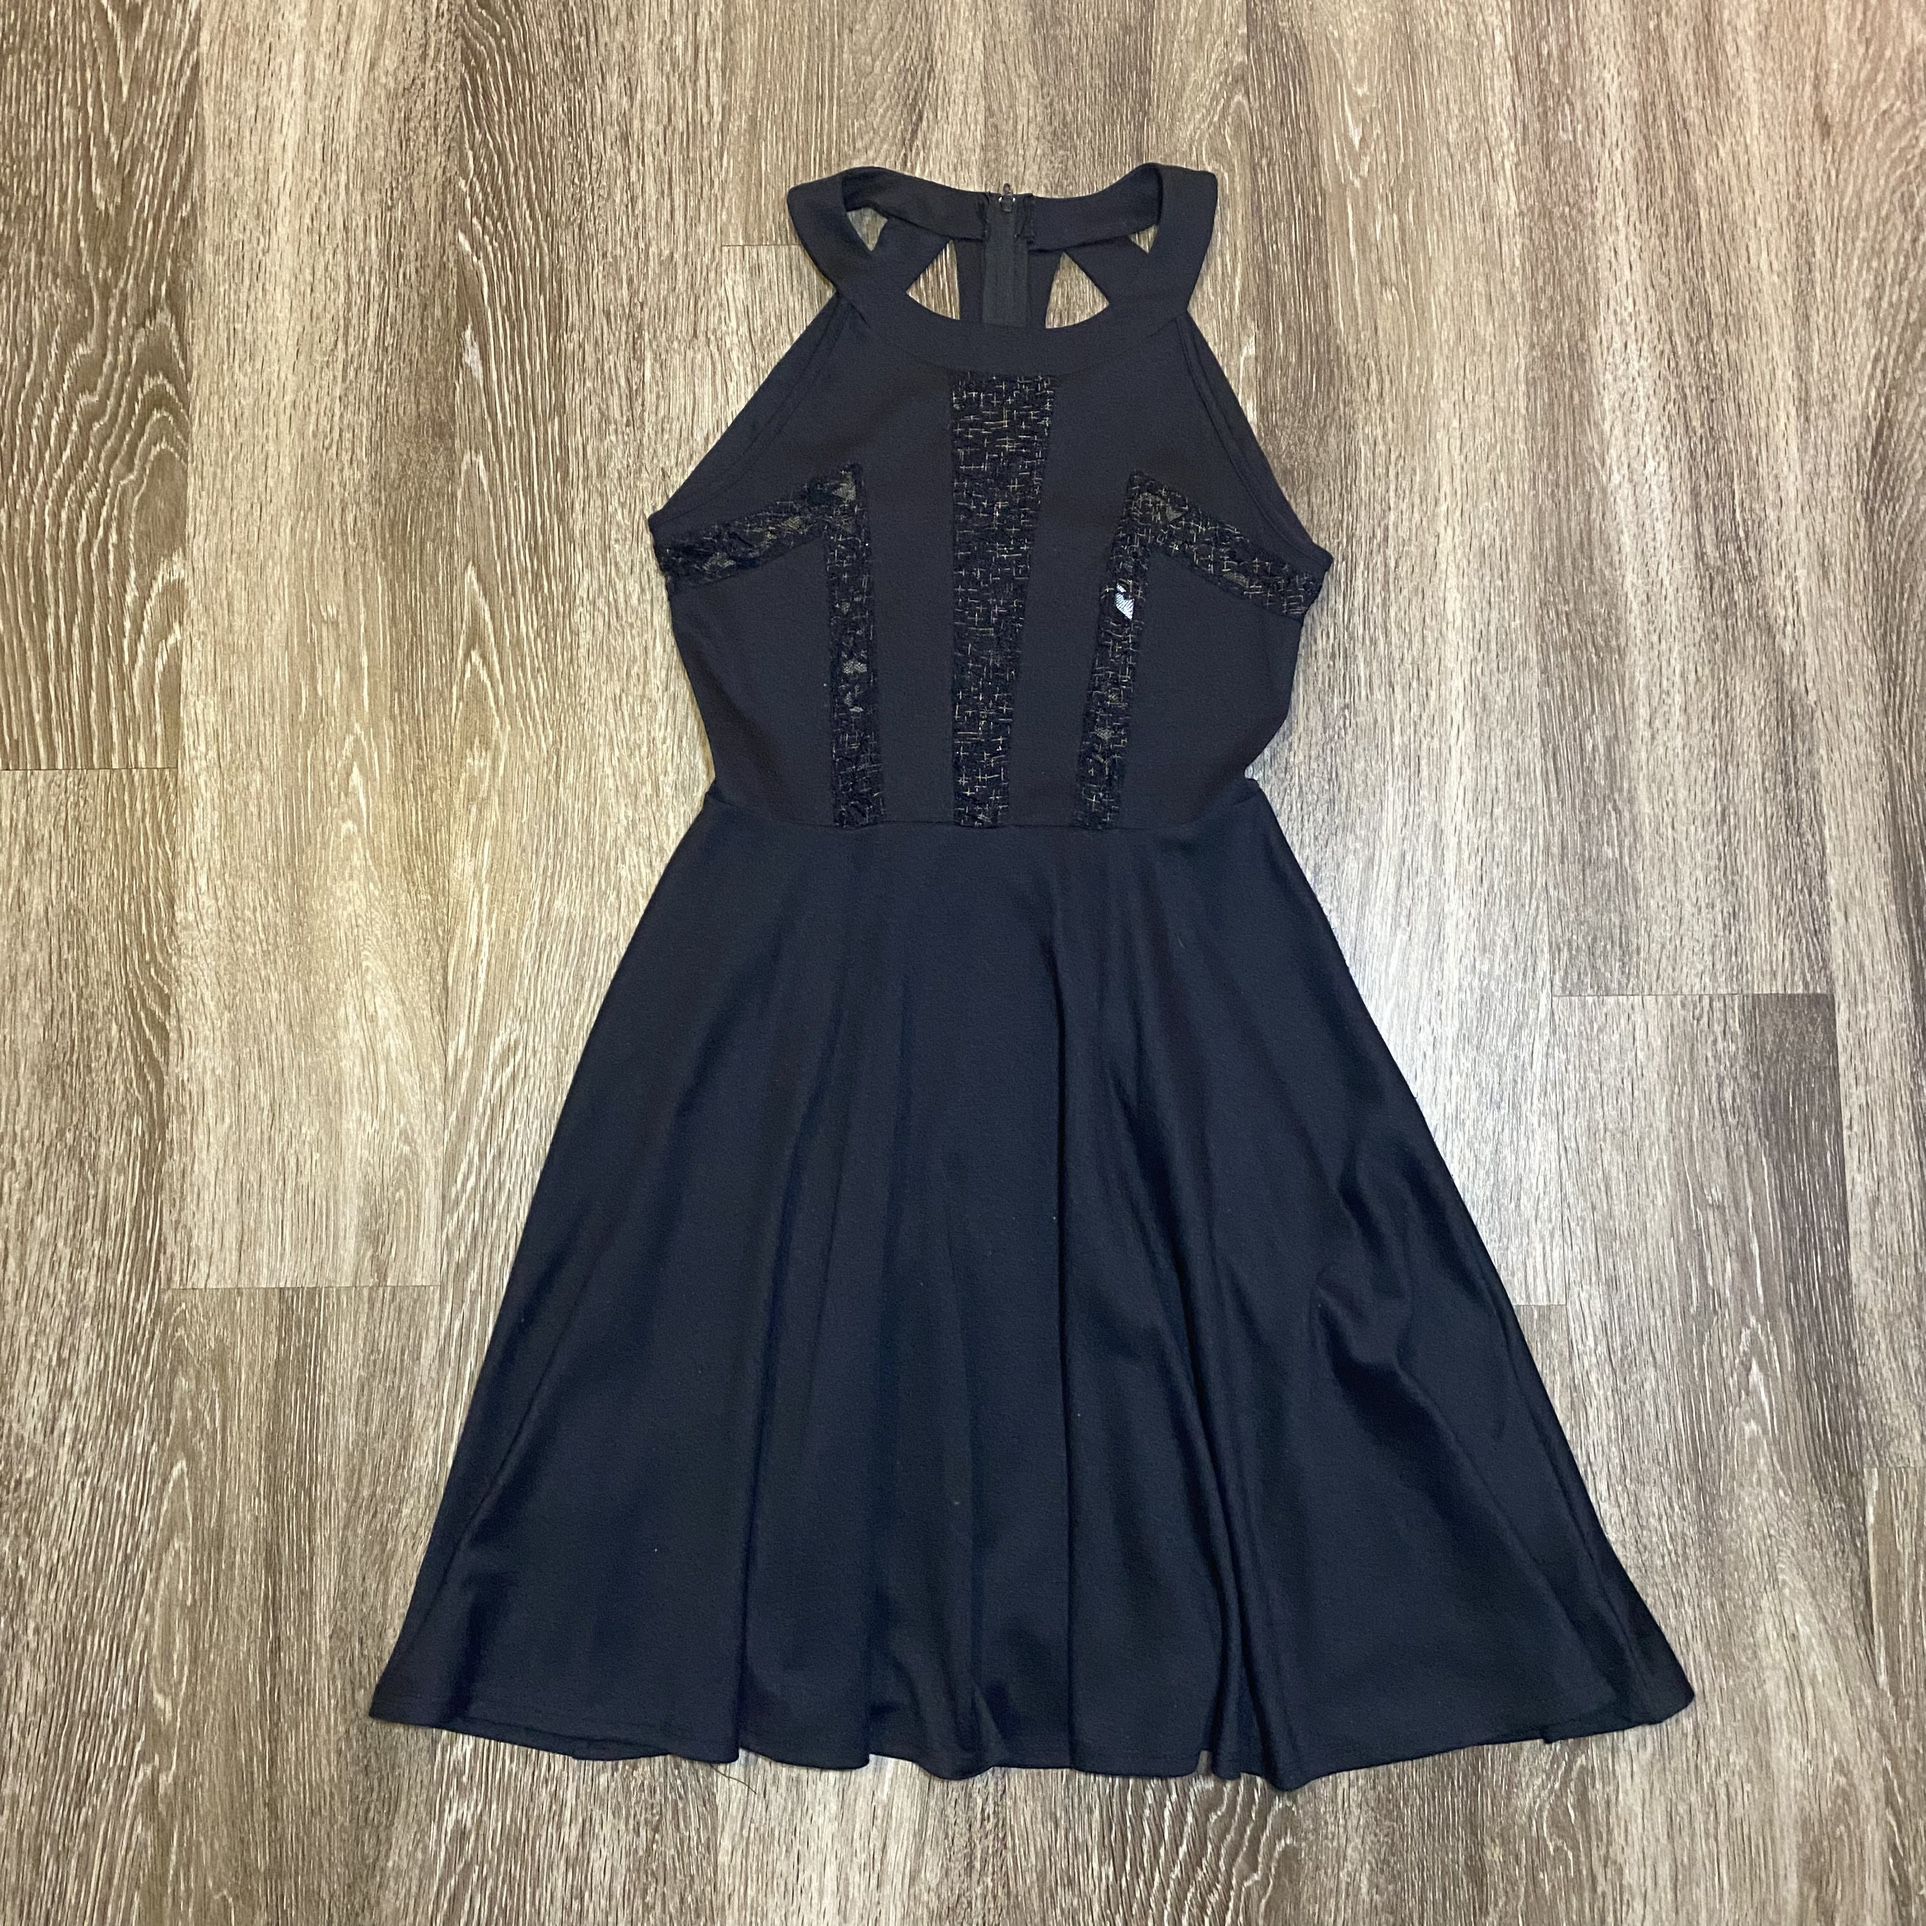 Black Lace Cutout Dress - M